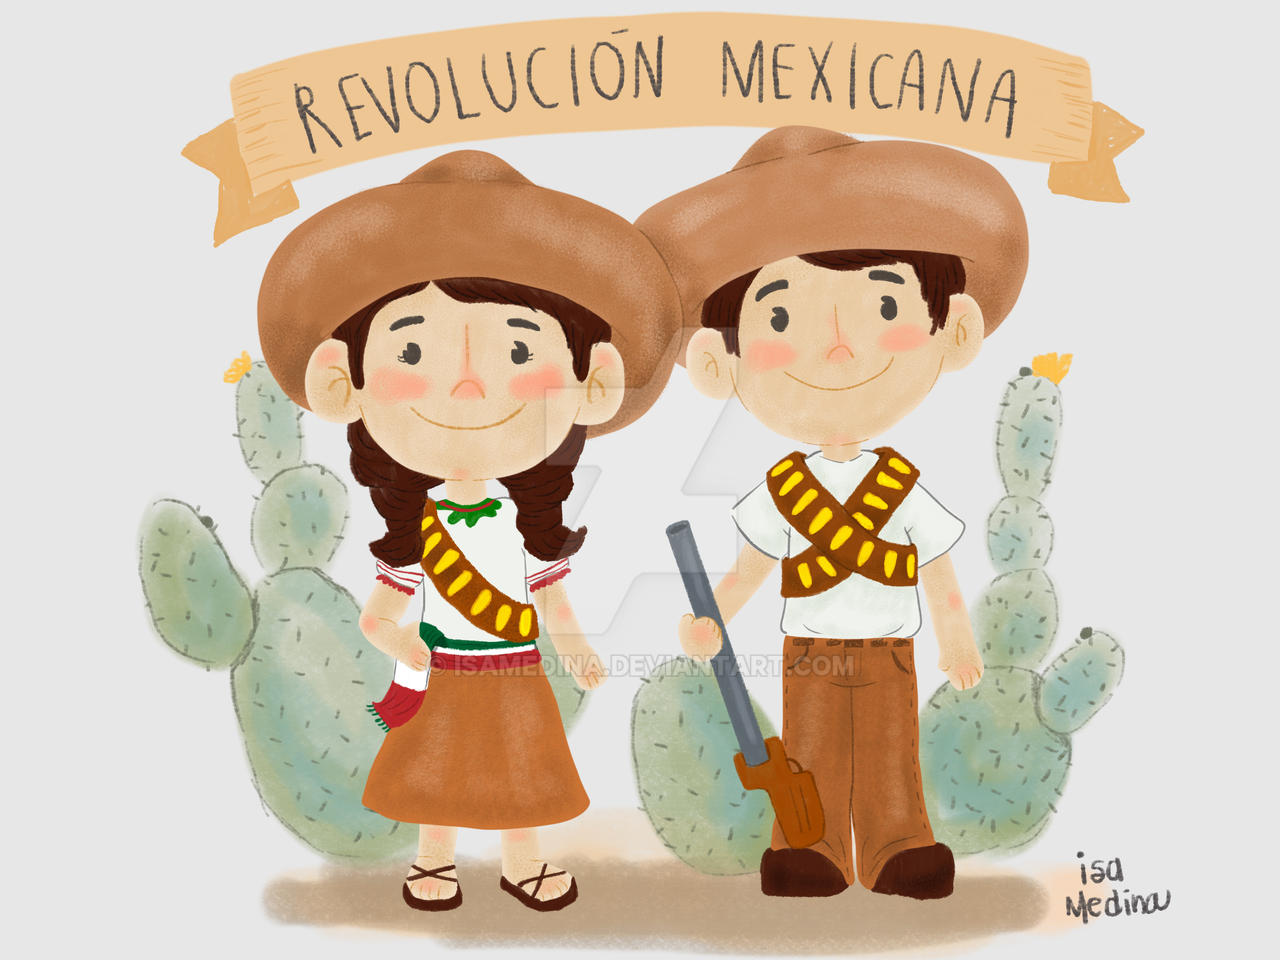 Revolucion Mexicana by isamedina on DeviantArt